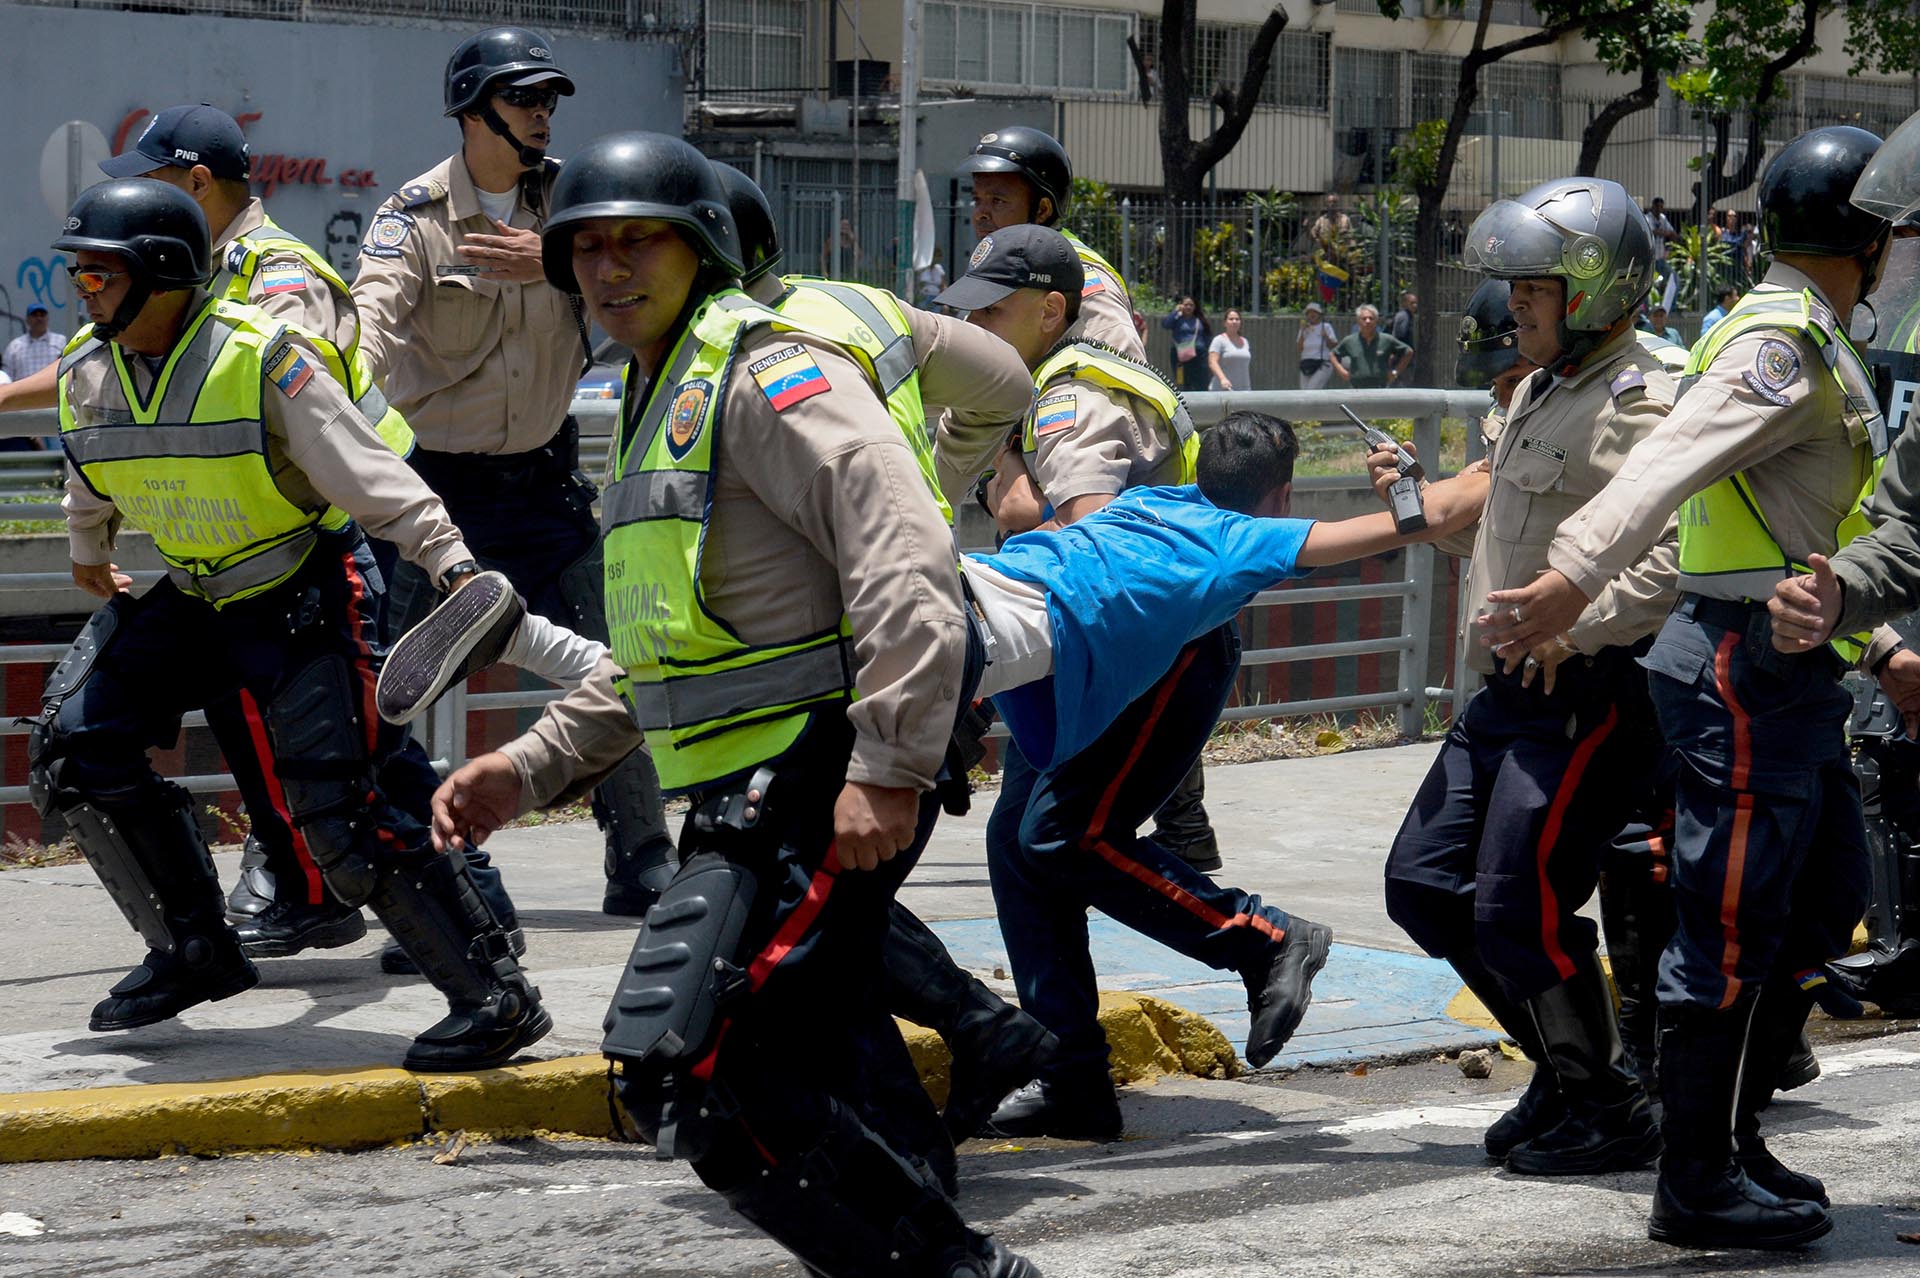 FOTO DE ARCHIVO: la policía del régimen chavista en Venezuela lleva a un manifestante bajo arresto durante una protesta contra Nicolás Maduro en Caracas el 4 de abril de 2017 (AFP / FEDERICO PARRA)